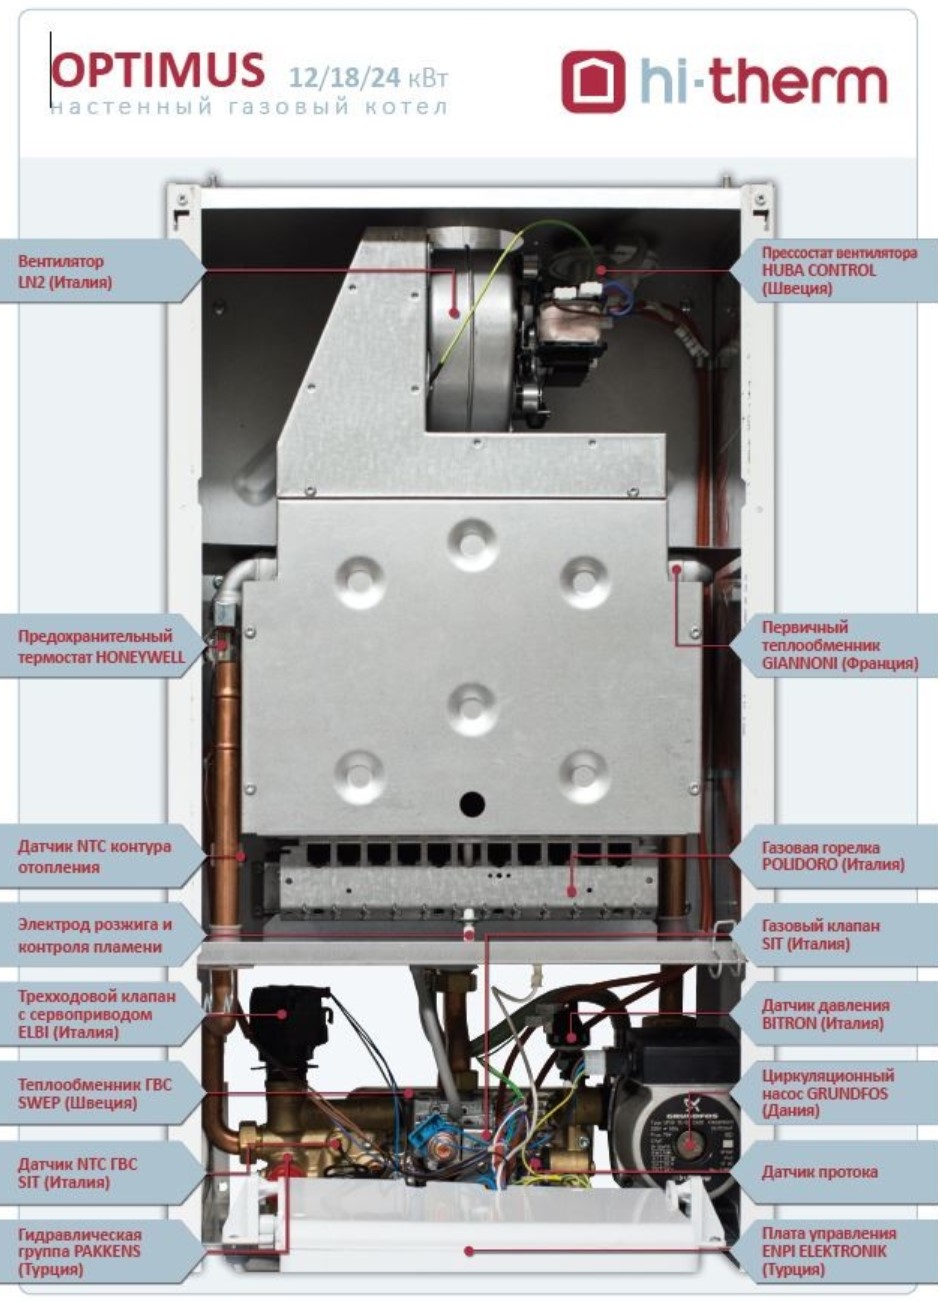 Газовий котел Hi-Therm Optimus 18 характеристики - фотографія 7